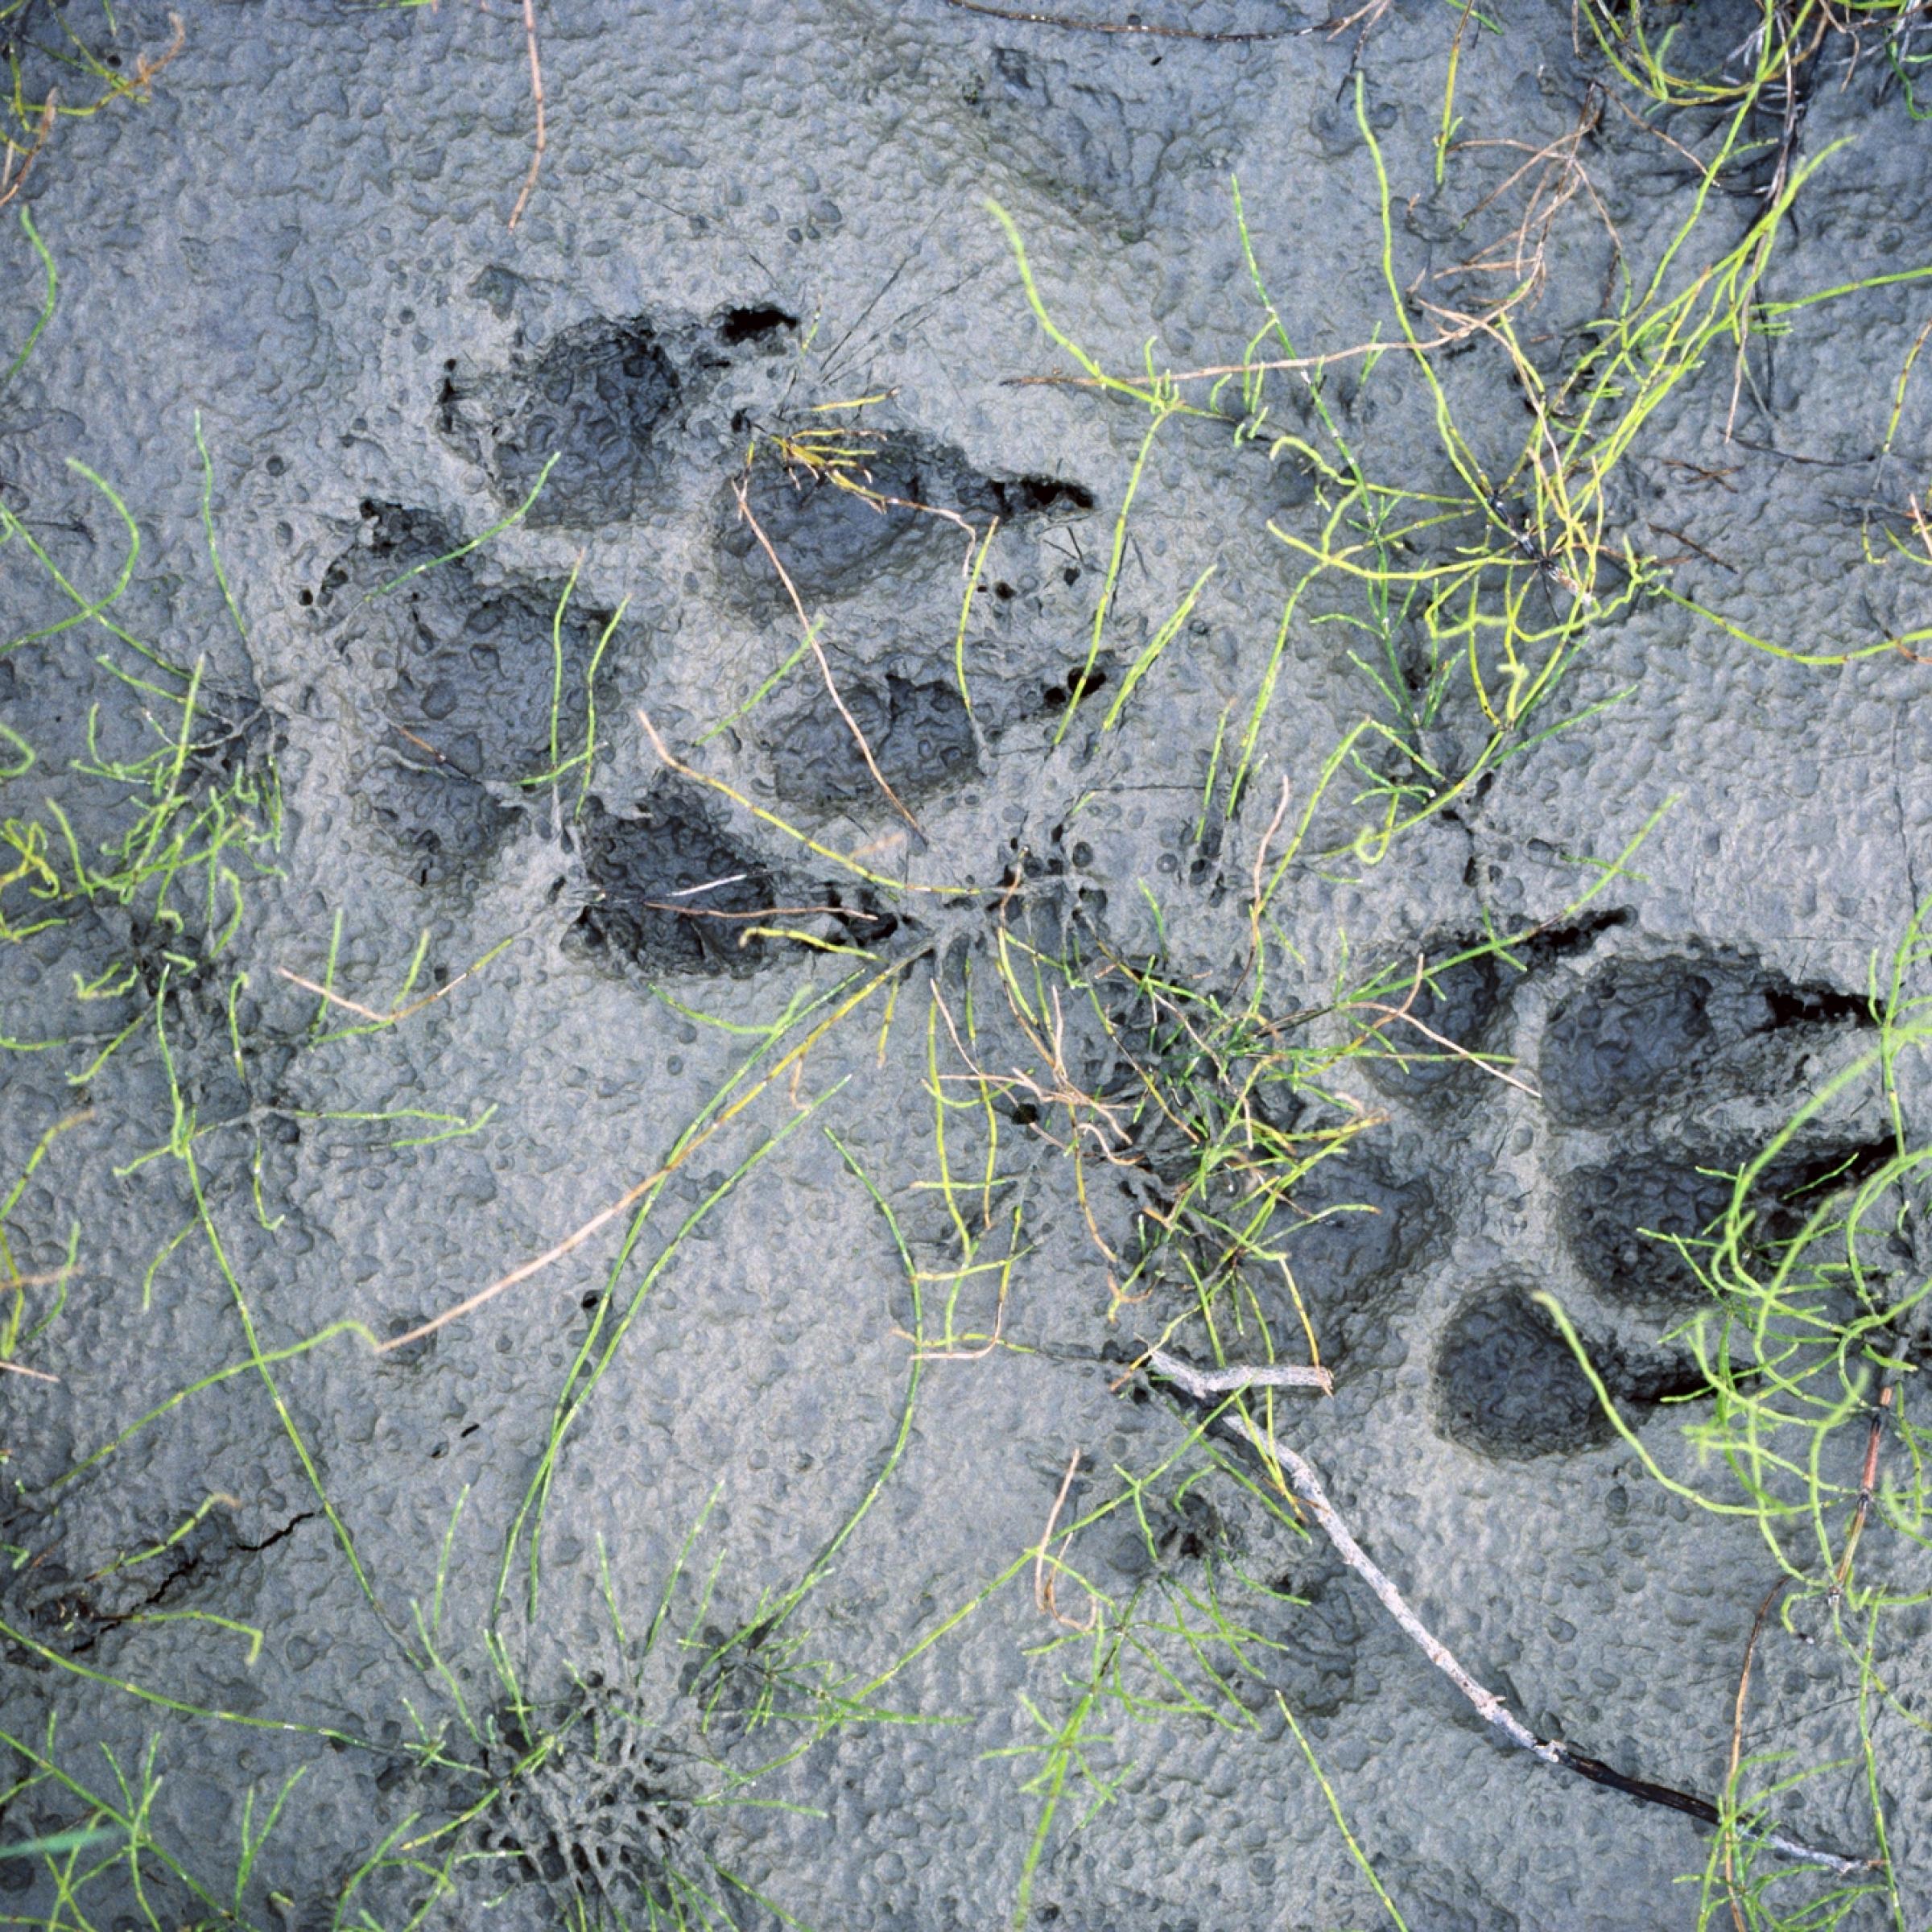 Zwei Pfotenabdrücke eines Wolfes in grauem Schlamm, über den sich einige dünne grüne Schachtelhalm-Zweige ausbreiten.